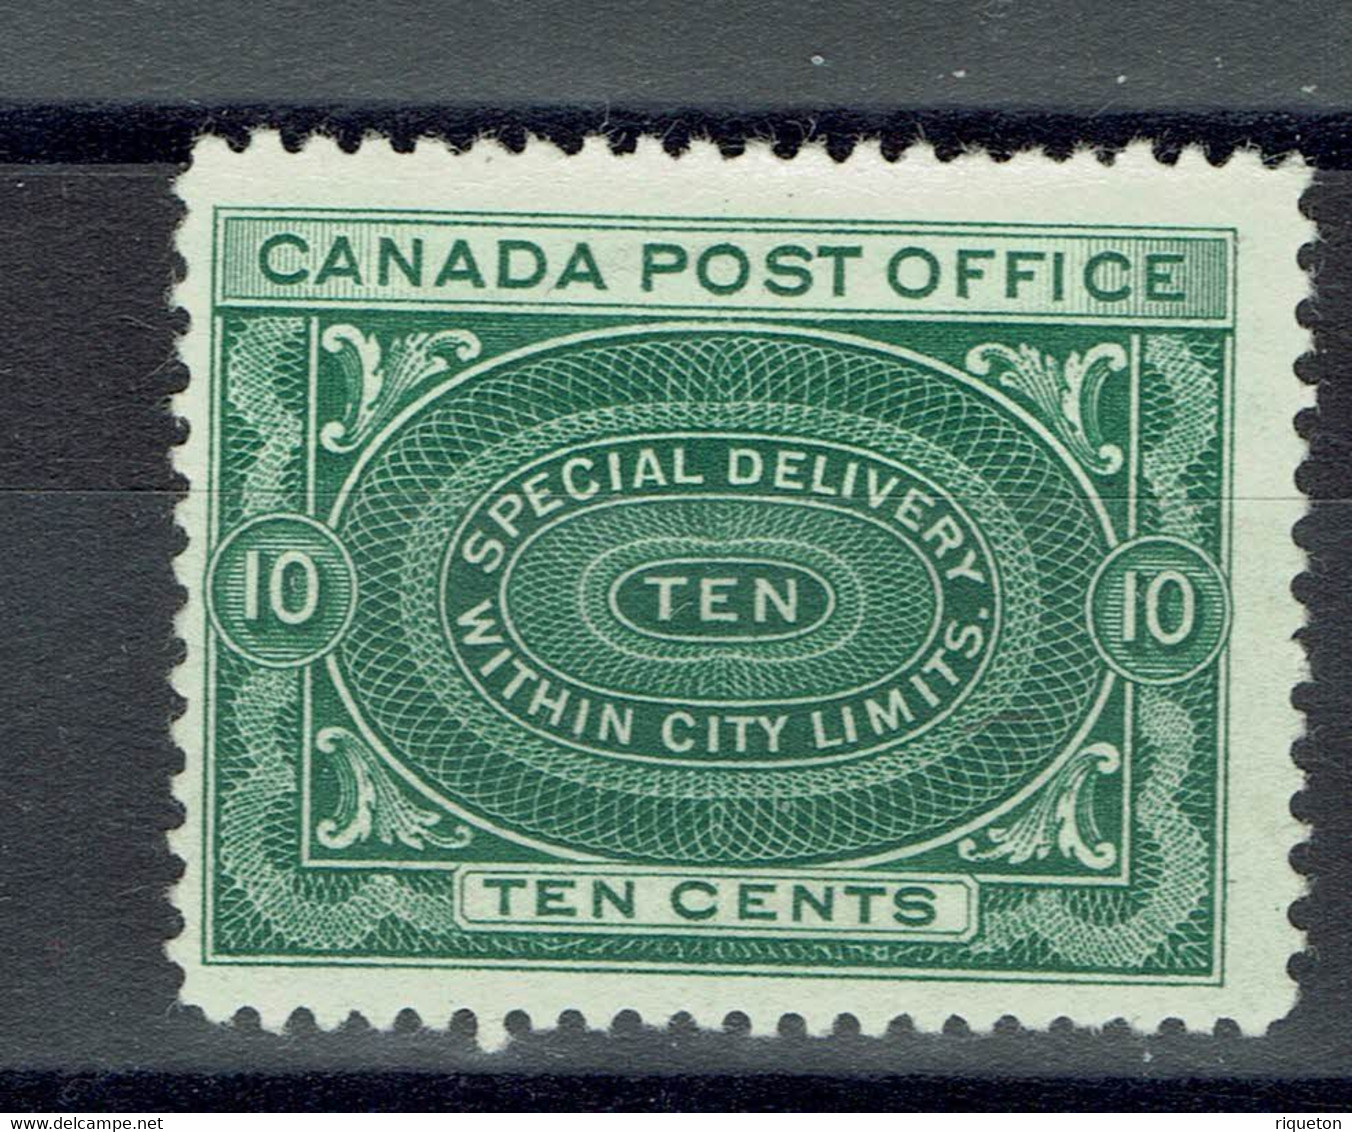 Canada - 1898-1920- Réf Yvert 2020 - Timbre Pour Lettres Par Exprès N° 1 - Neuf X - - Eilbriefmarken